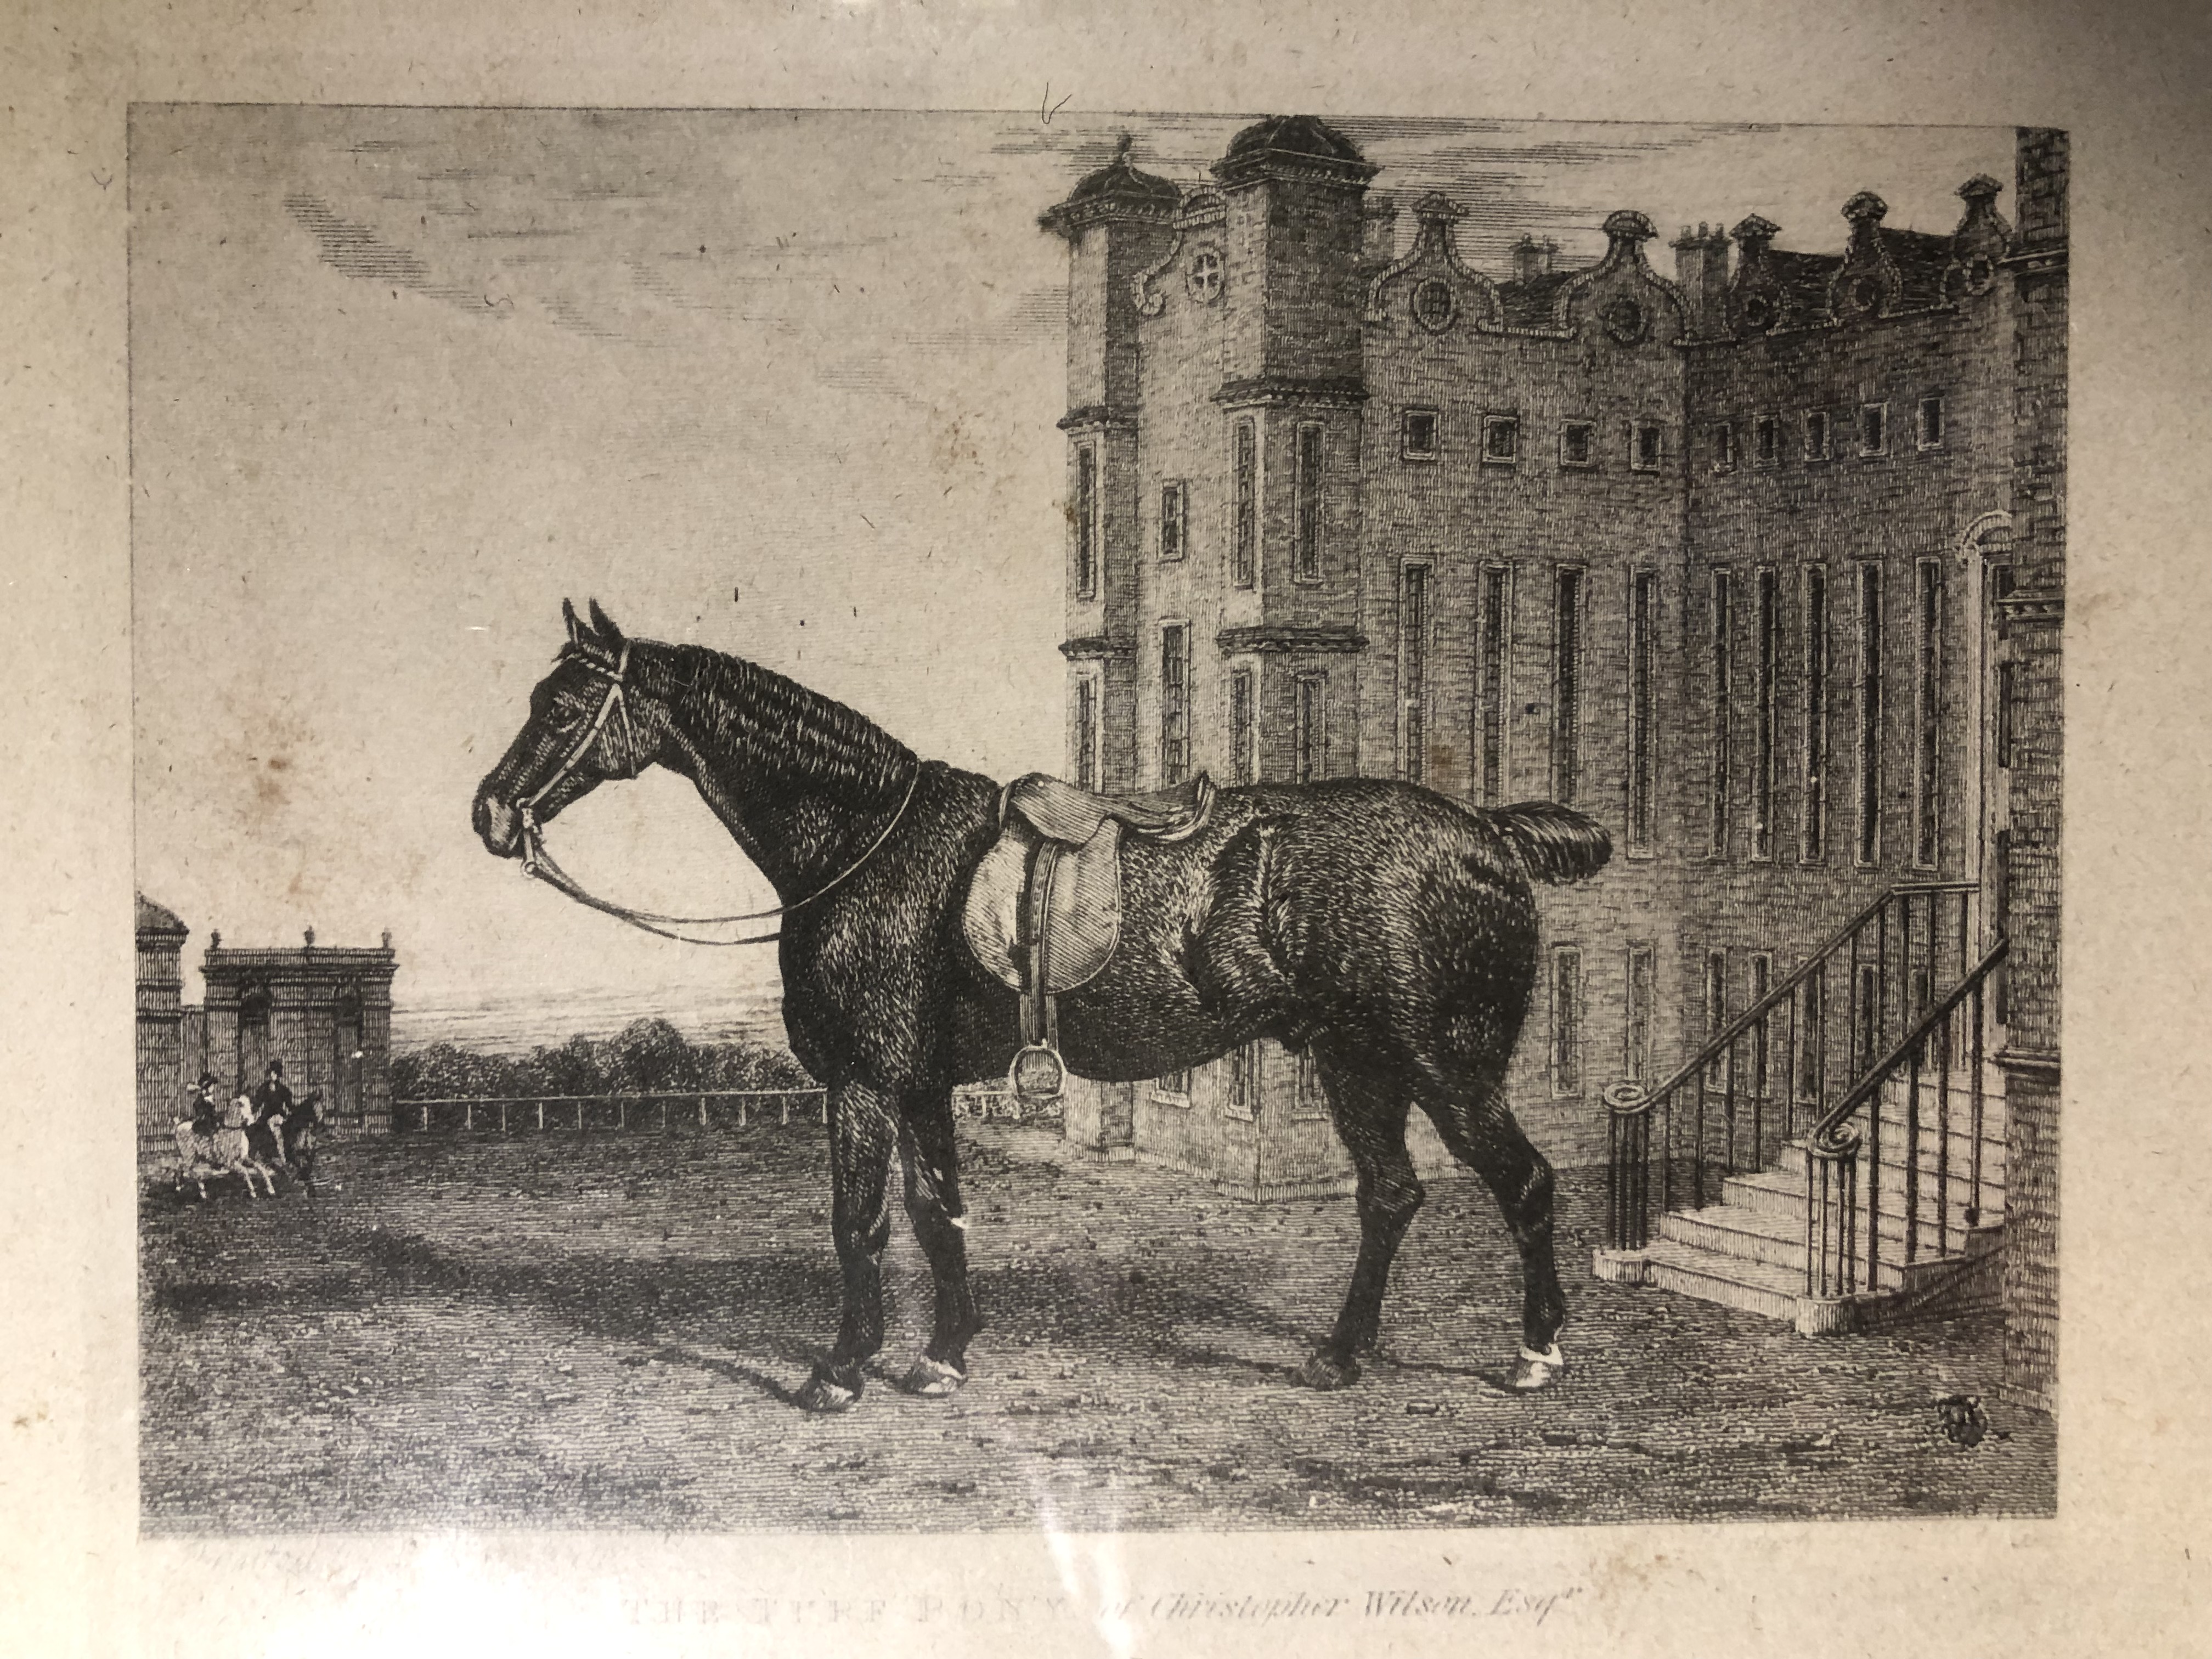 Turf pony, saddled and bridled, outside large country house